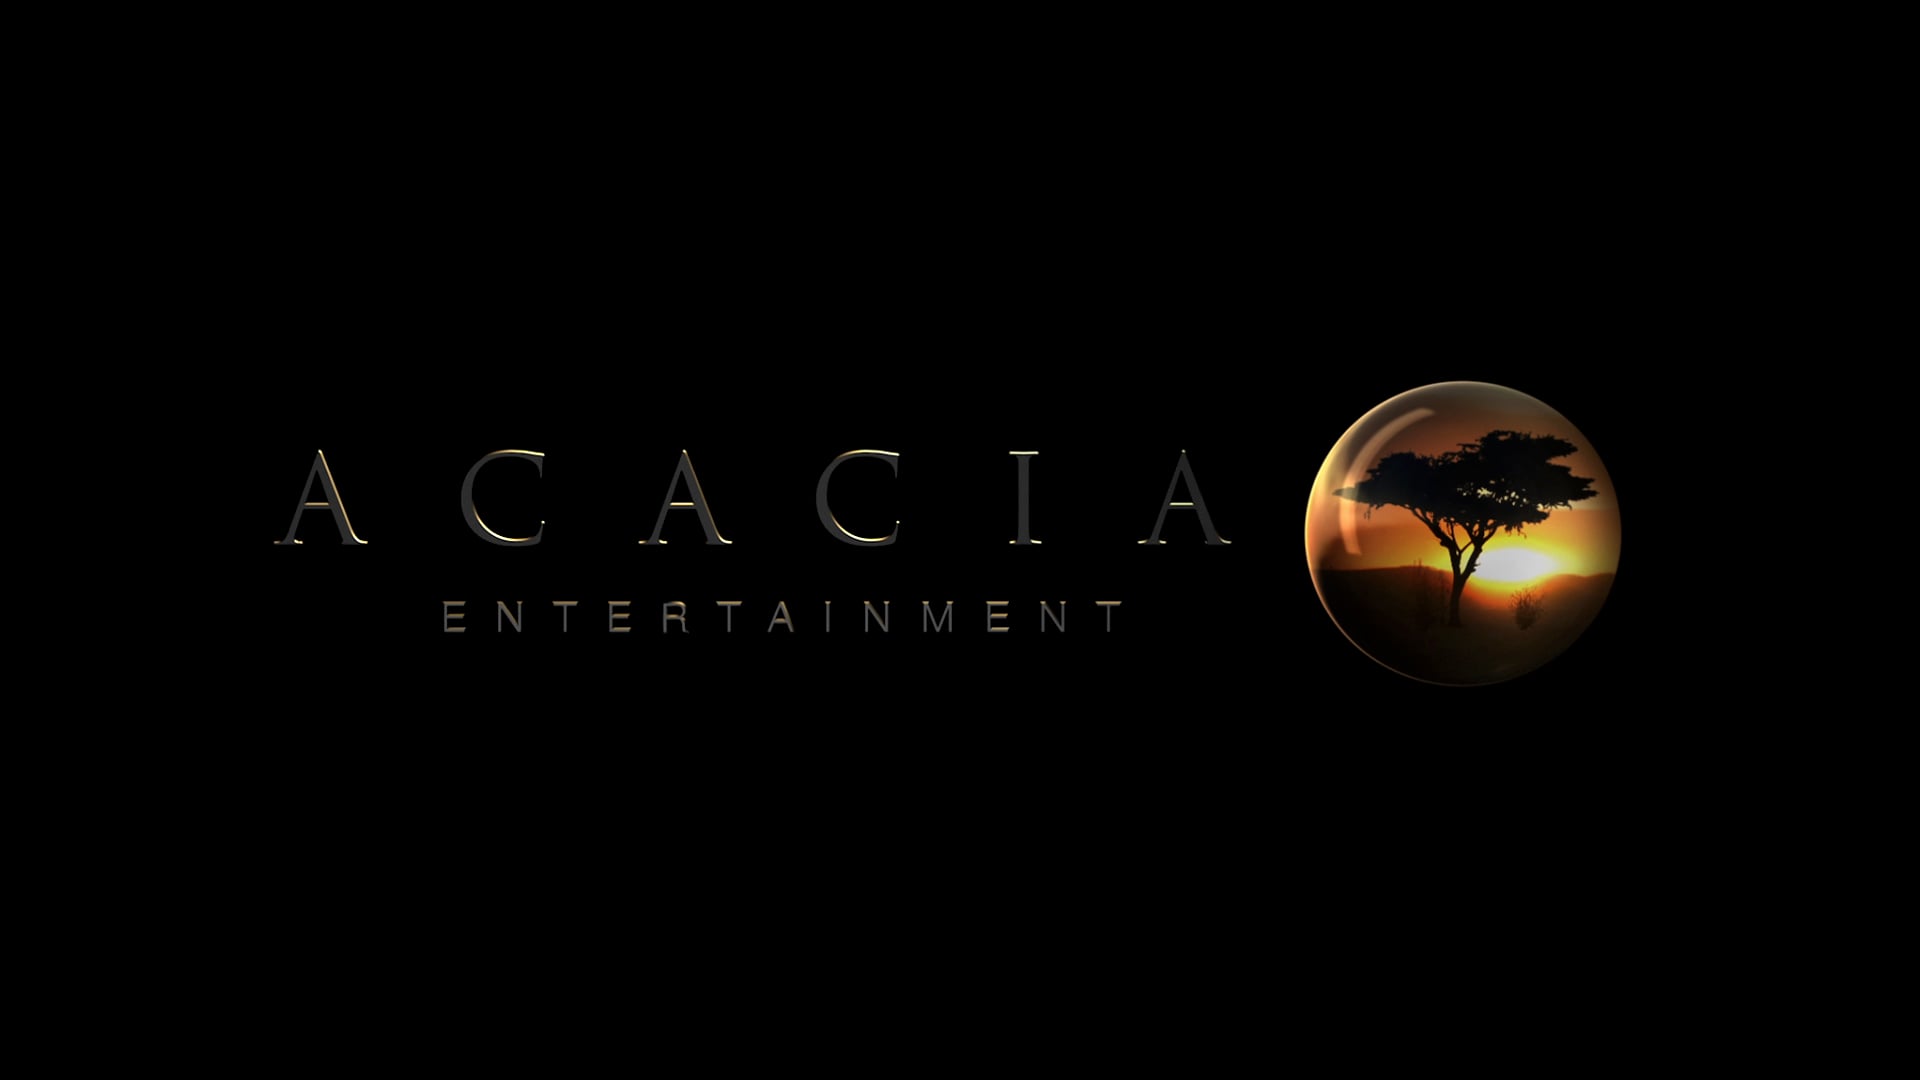 Acacia Entertainment (Theatrical Logotype)